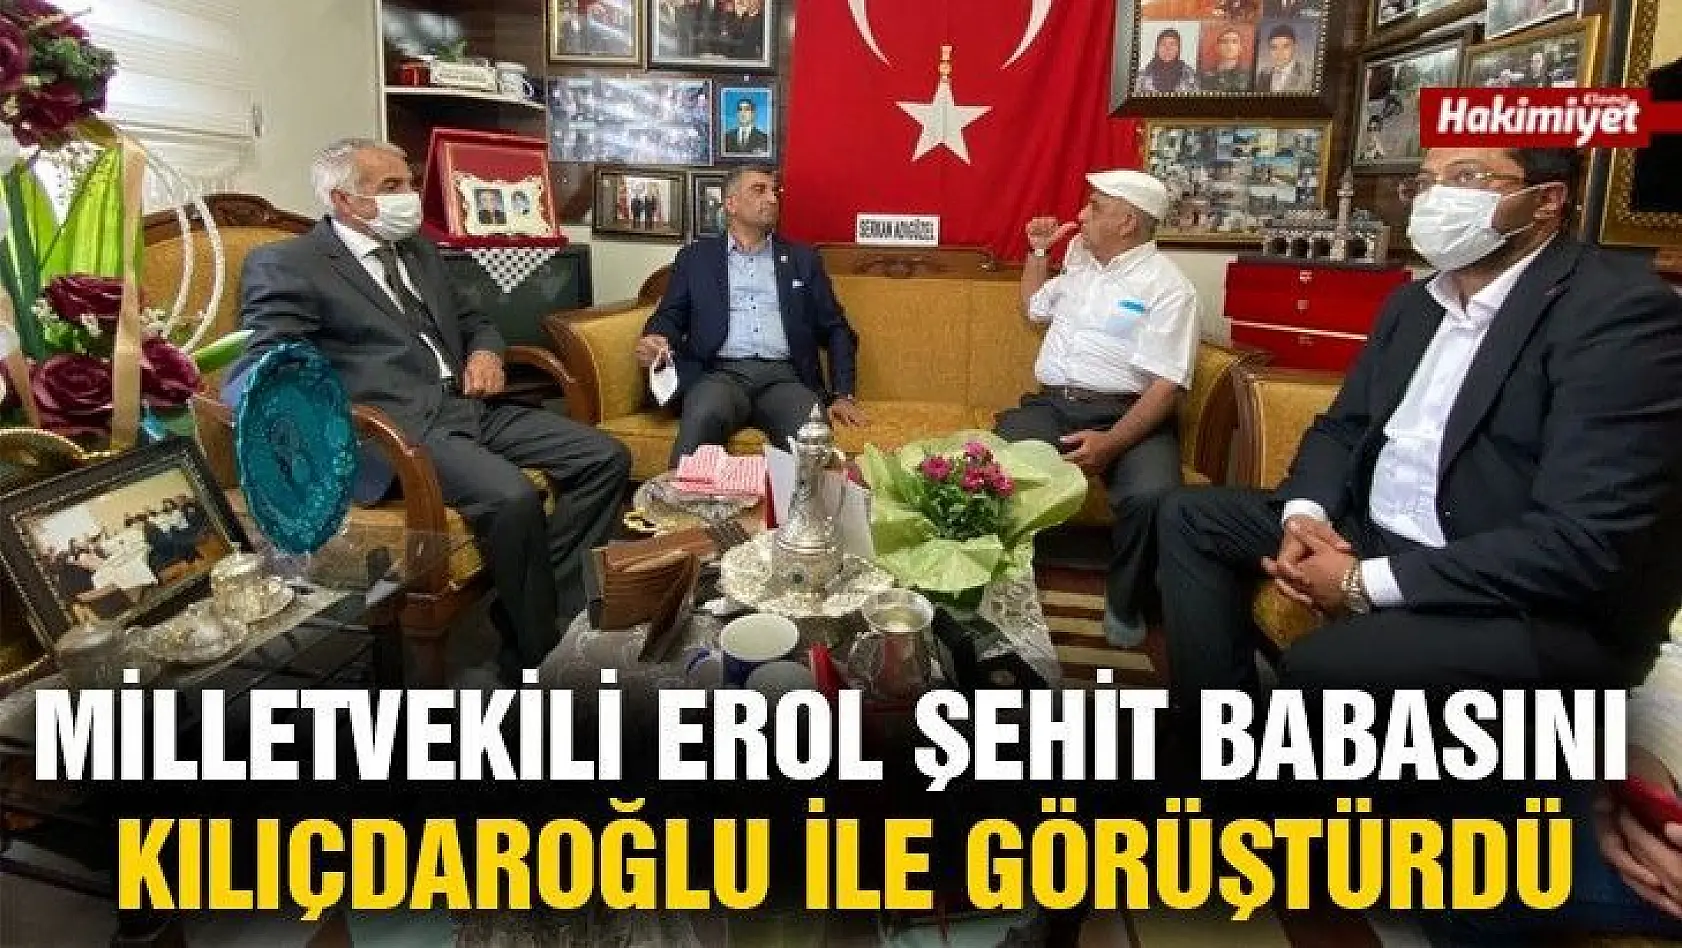 Milletvekili Erol Şehit Babasını Kılıçdaroğlu ile görüştürdü